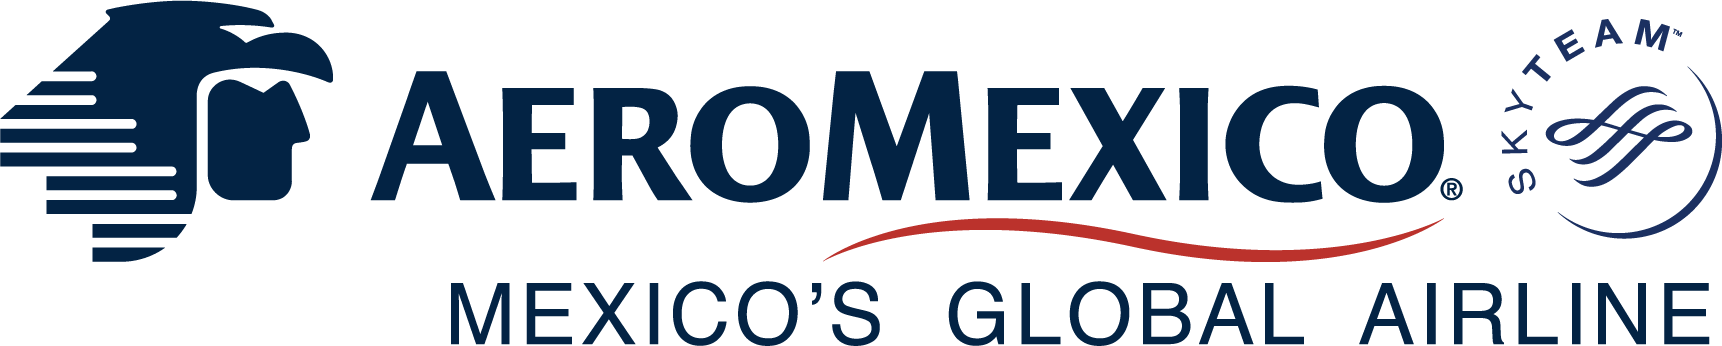 Aeromexico 